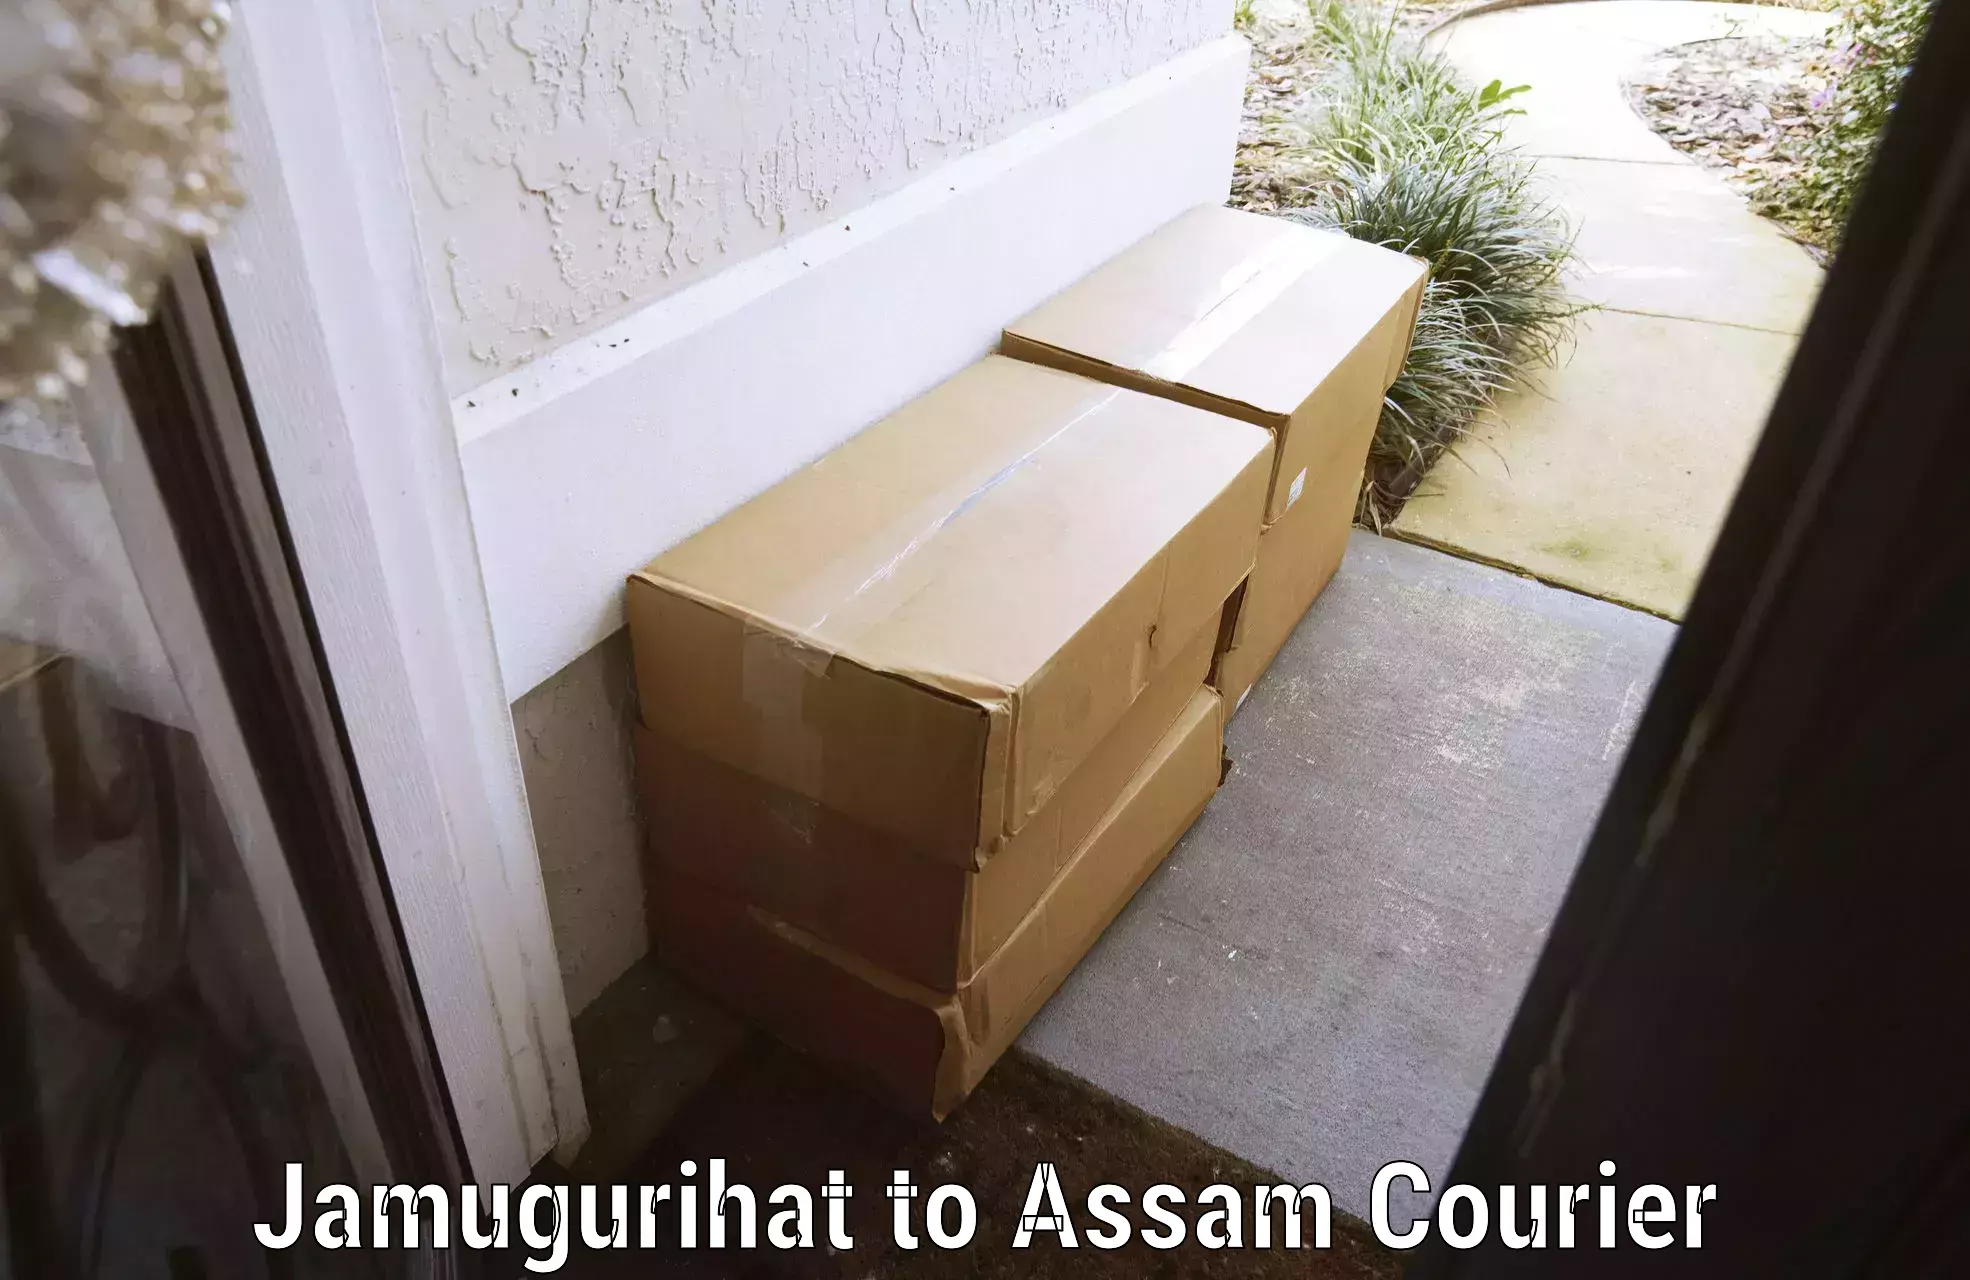 Luggage courier network Jamugurihat to Mangaldoi